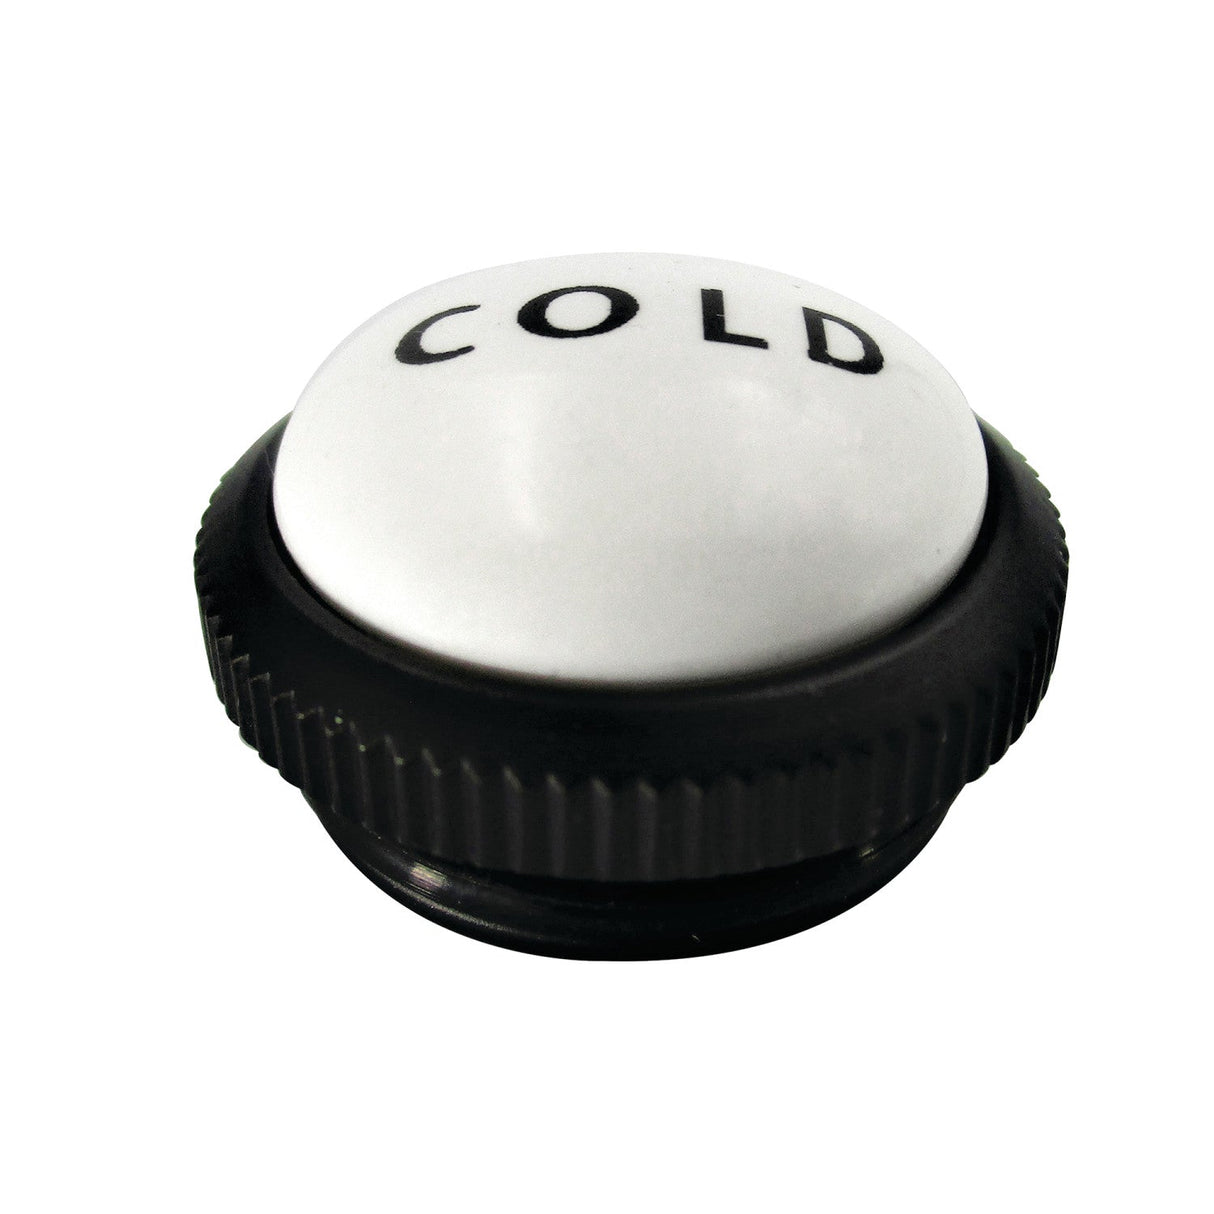 CCHIMX0C Cold Handle Index Button, Matte Black